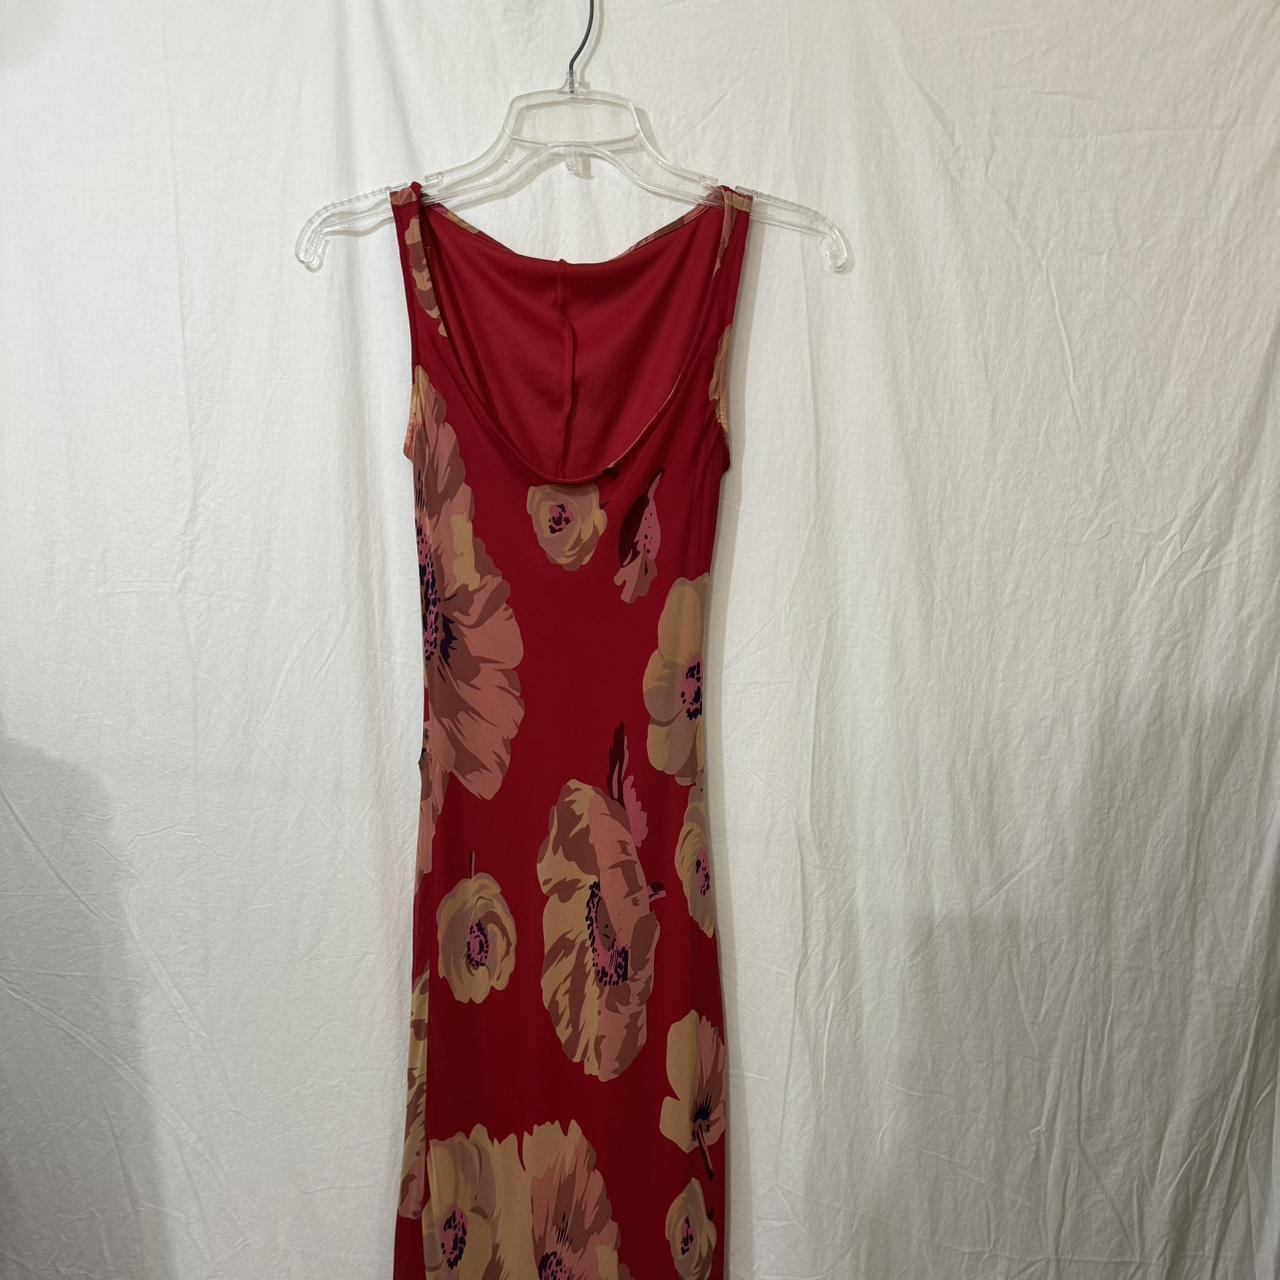 Vintage dress -Brand and size tag felt off -armpit... - Depop